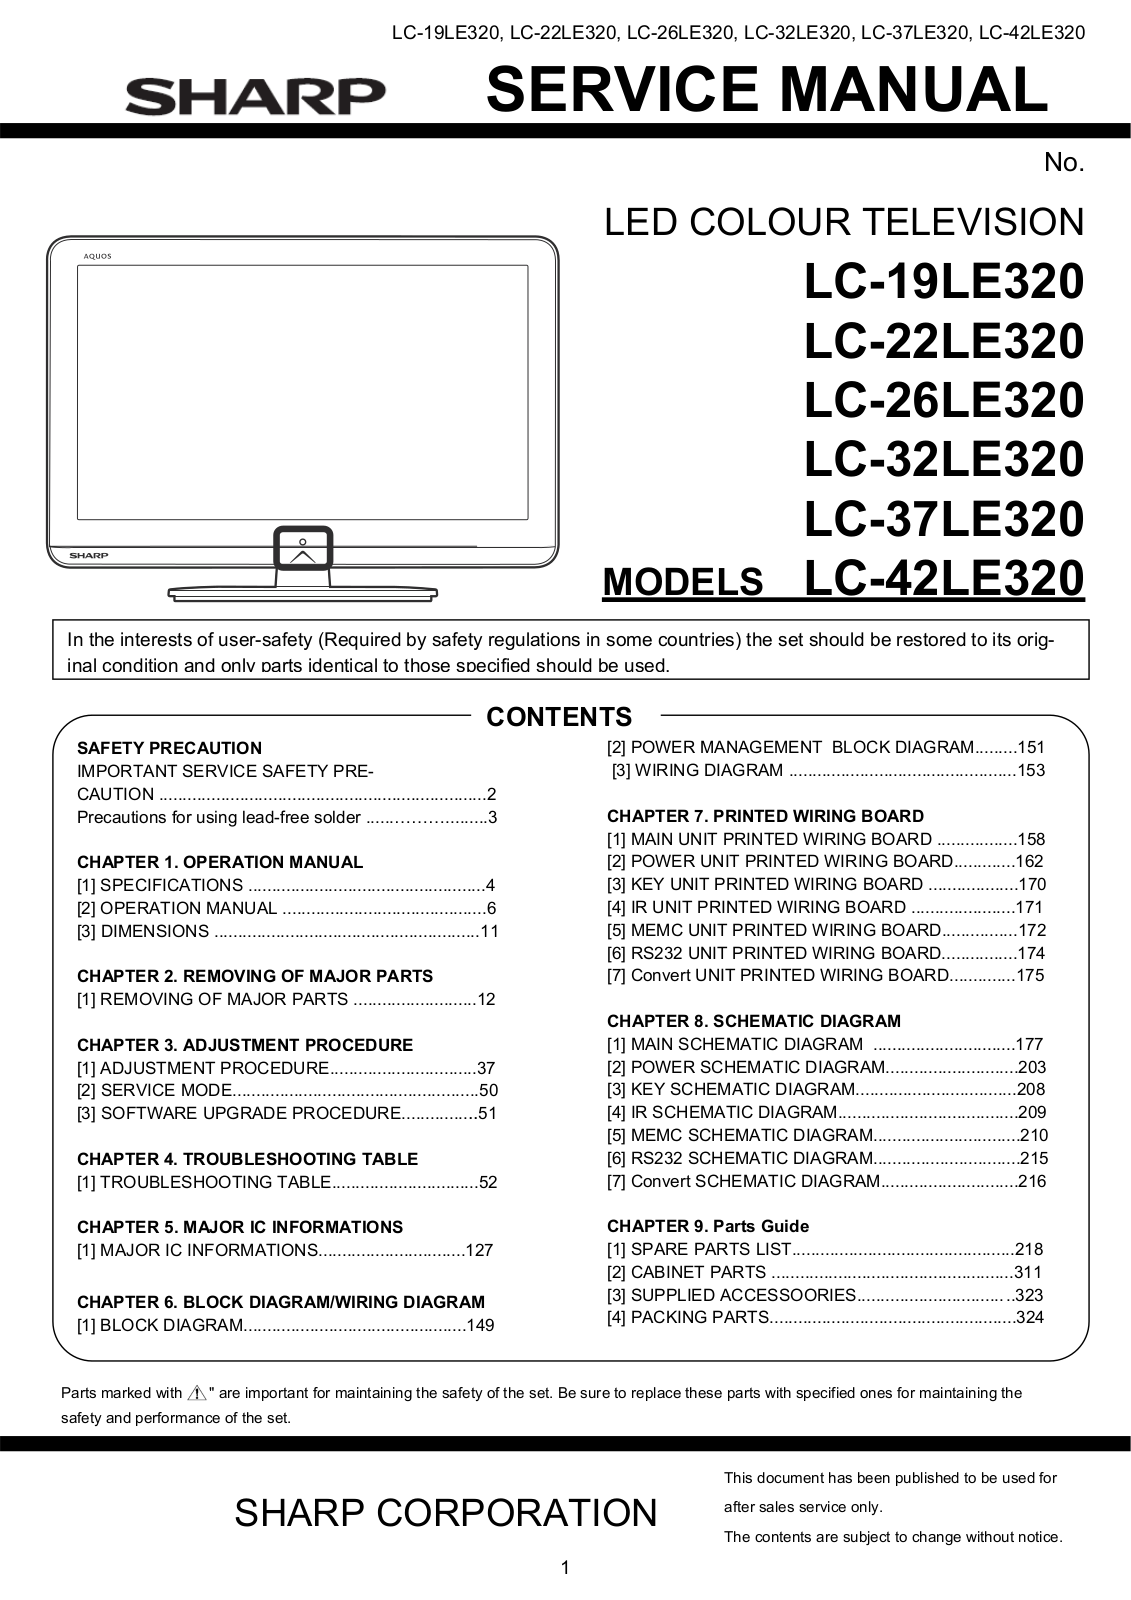 SHARP LC-19LE320, LC-22LE320, LC-26LE320, LC-32LE320, LC-37LE320 Service Manual